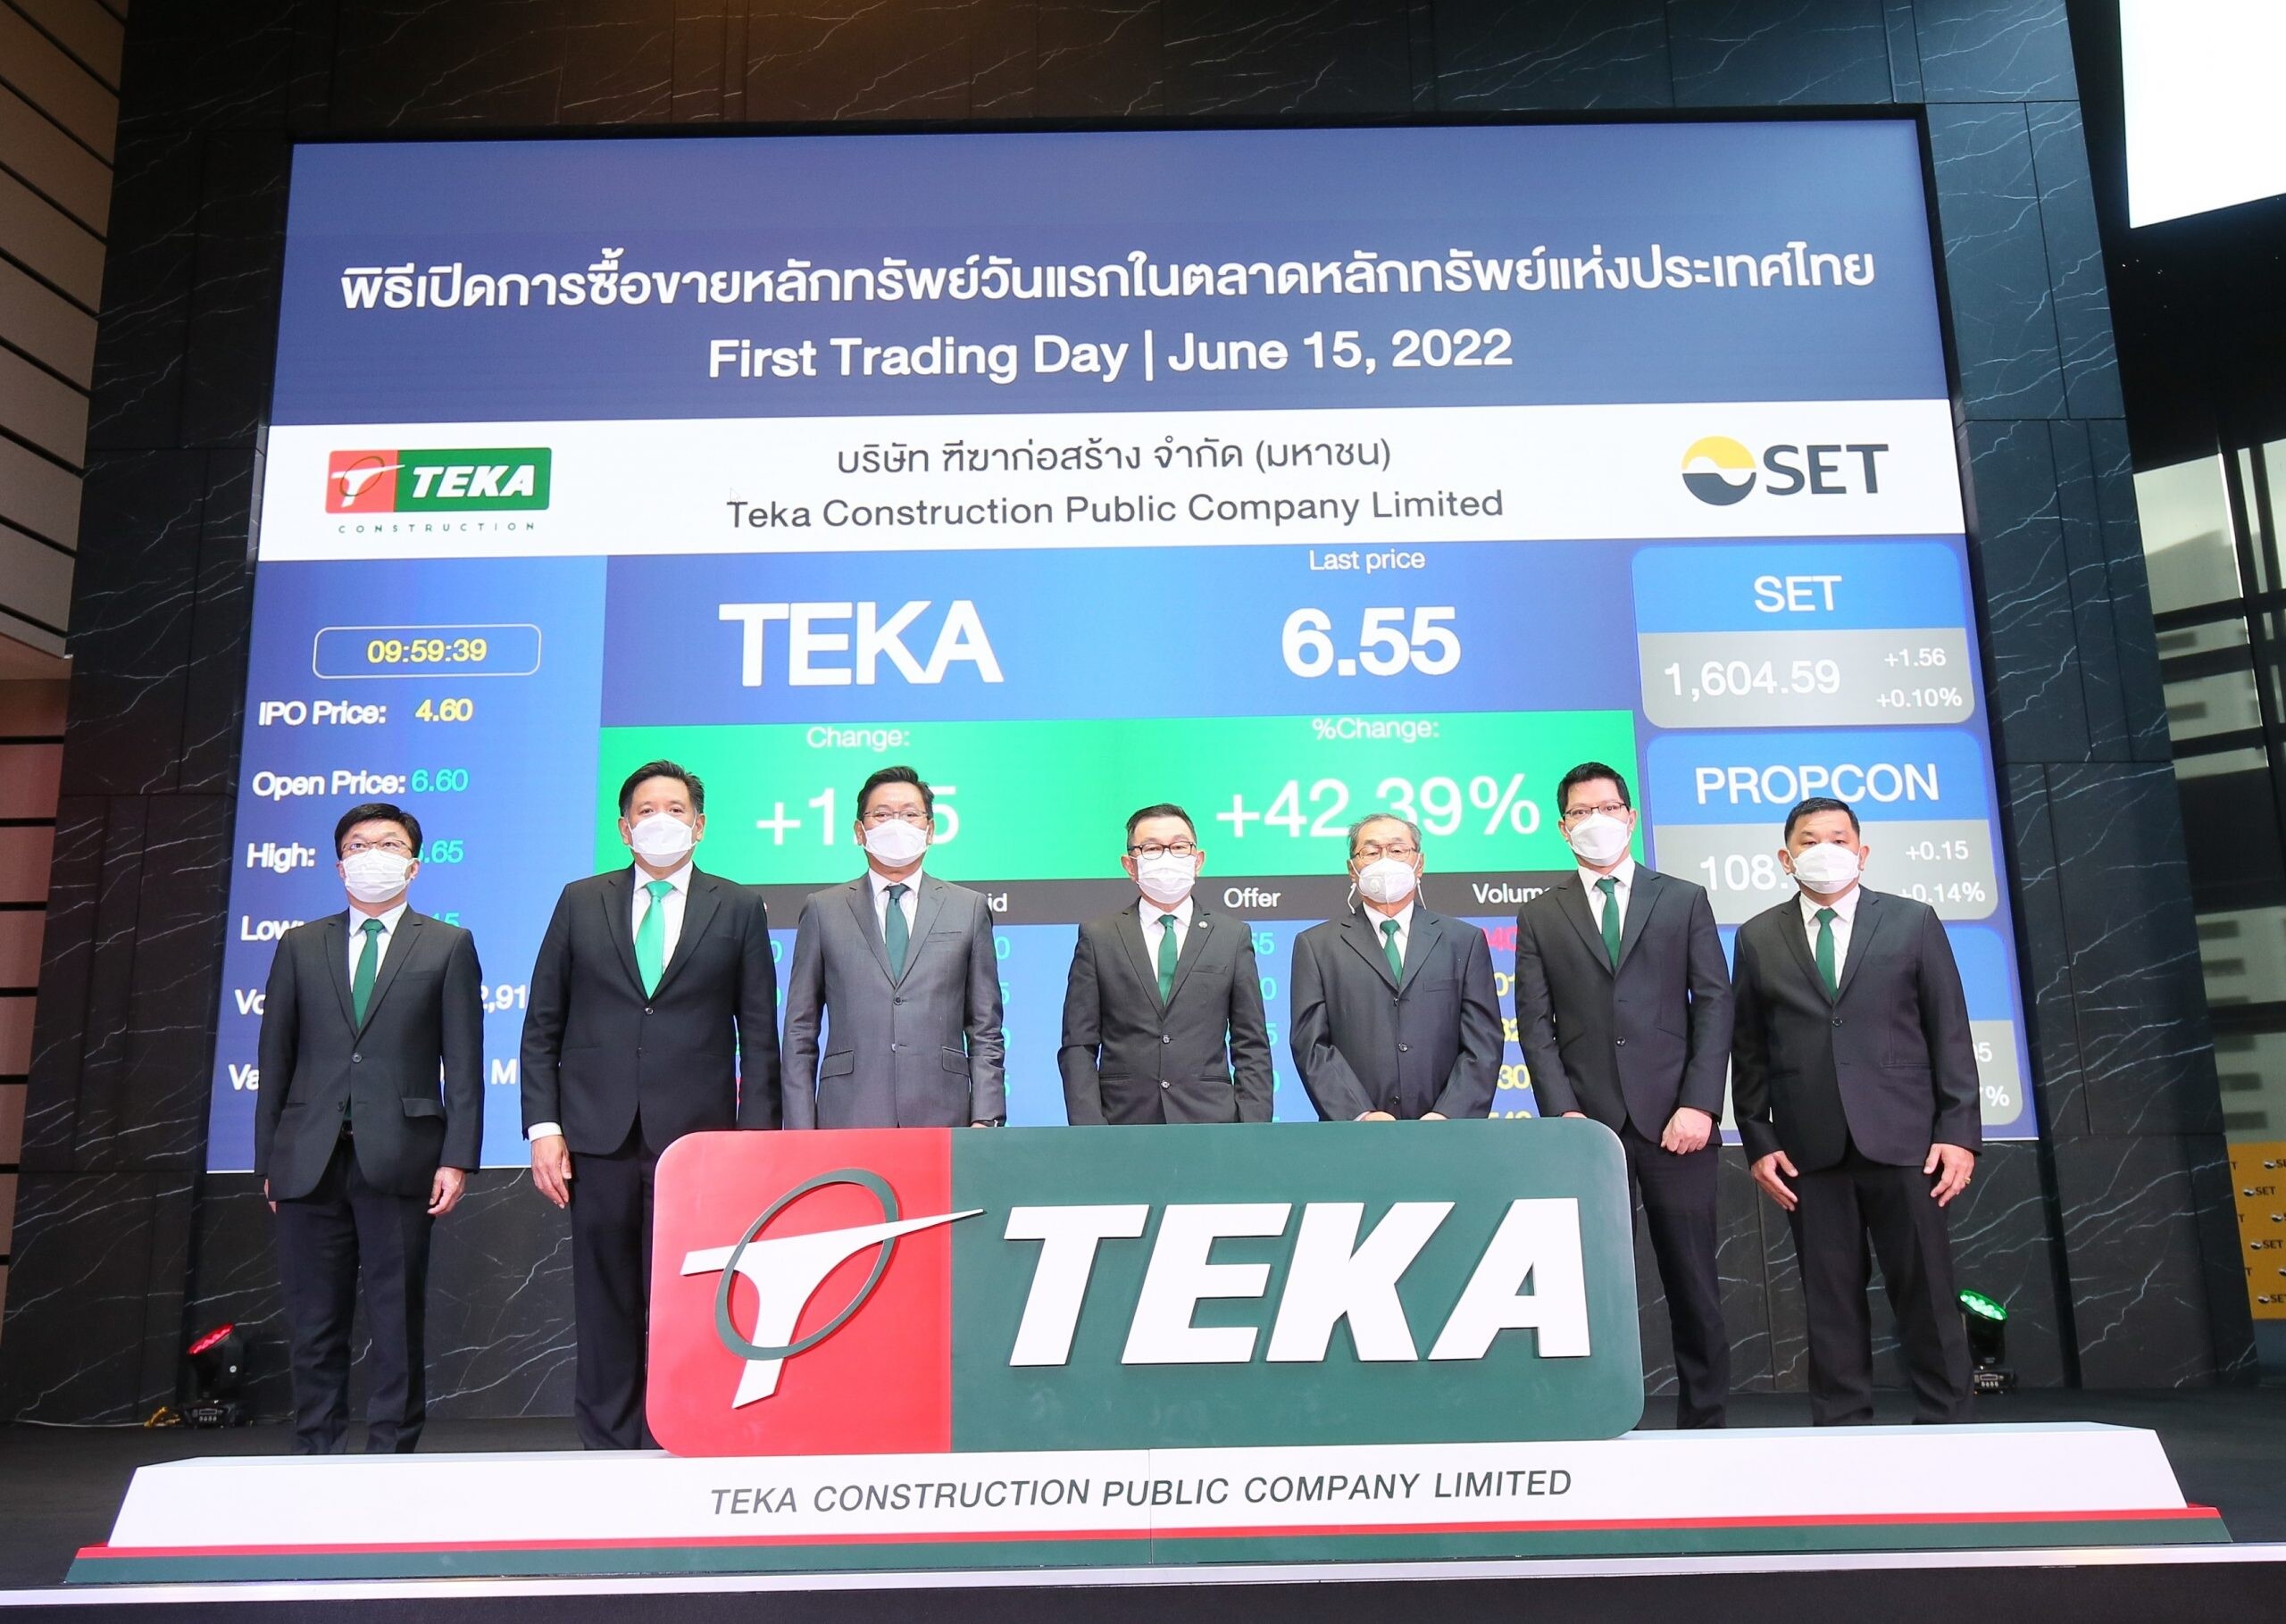 TEKA เริ่มซื้อขายในตลาดหลักทรัพย์ฯ วันแรก